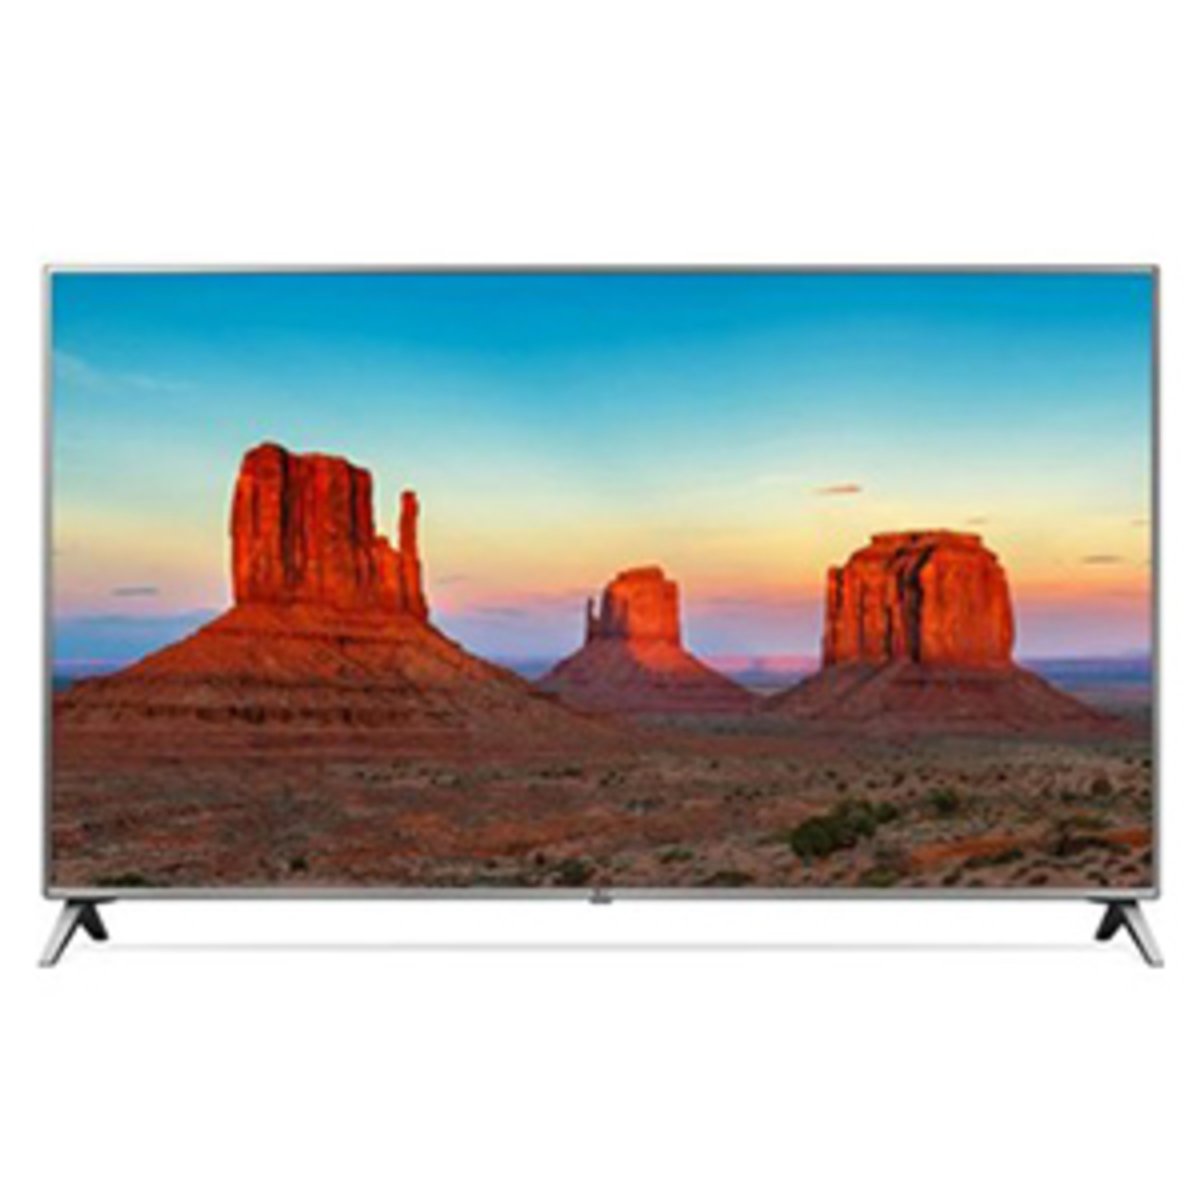 LG Ultra HD Smart LED TV 70UK7000PVA 70inch